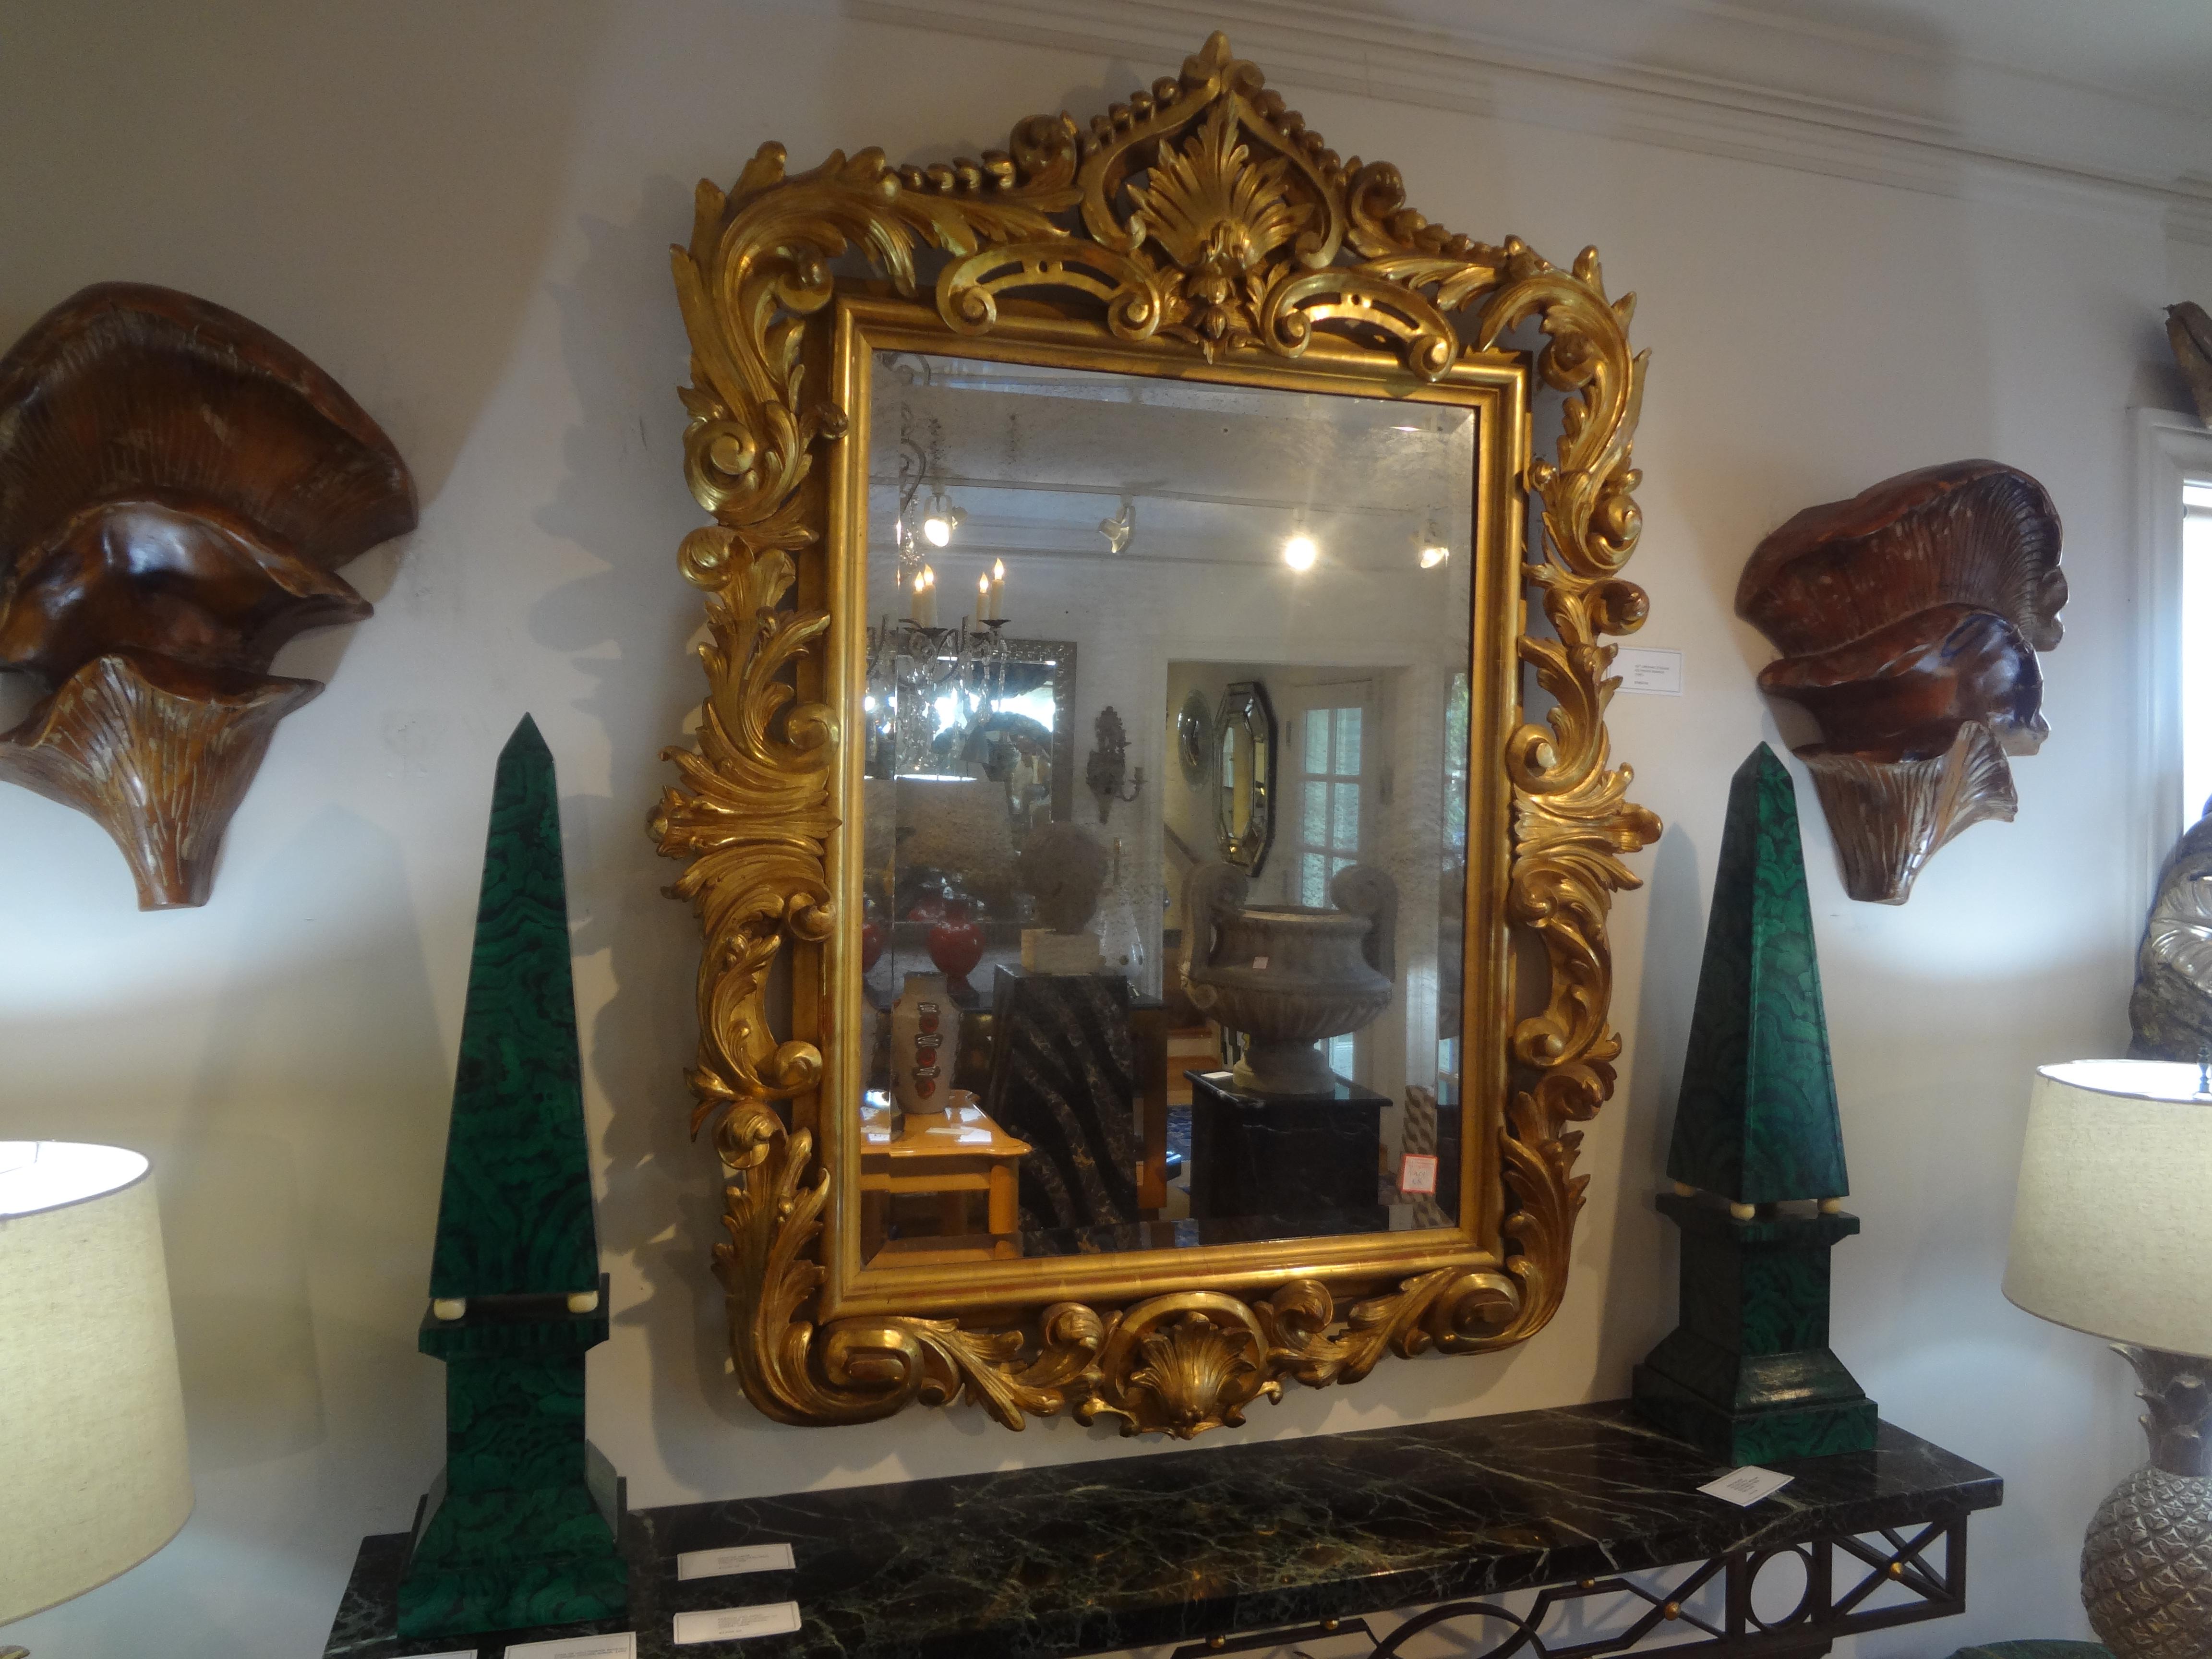 Italienischer Barockspiegel aus Giltwood aus dem 19. Jahrhundert.
Unser hervorragender antiker italienischer Barockspiegel aus vergoldetem Holz behält den ursprünglichen Quecksilberspiegel bei und ist ein echter Hingucker.
Einfach atemberaubend!